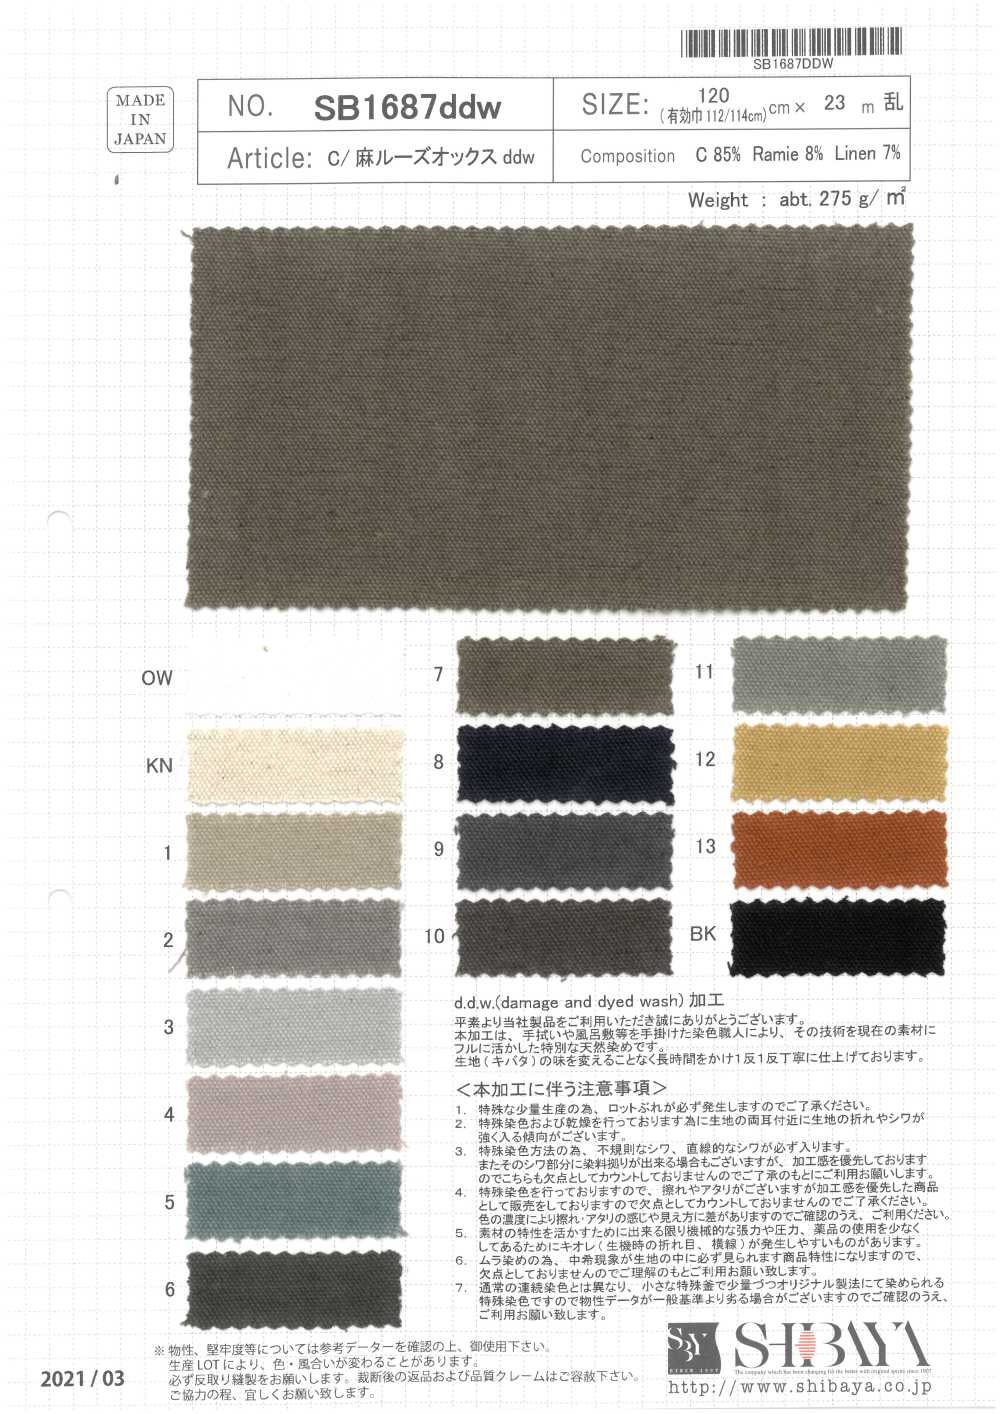 SB1687ddw Algodón/ Lino Suelto Oxford Ddw Processing[Fabrica Textil] SHIBAYA